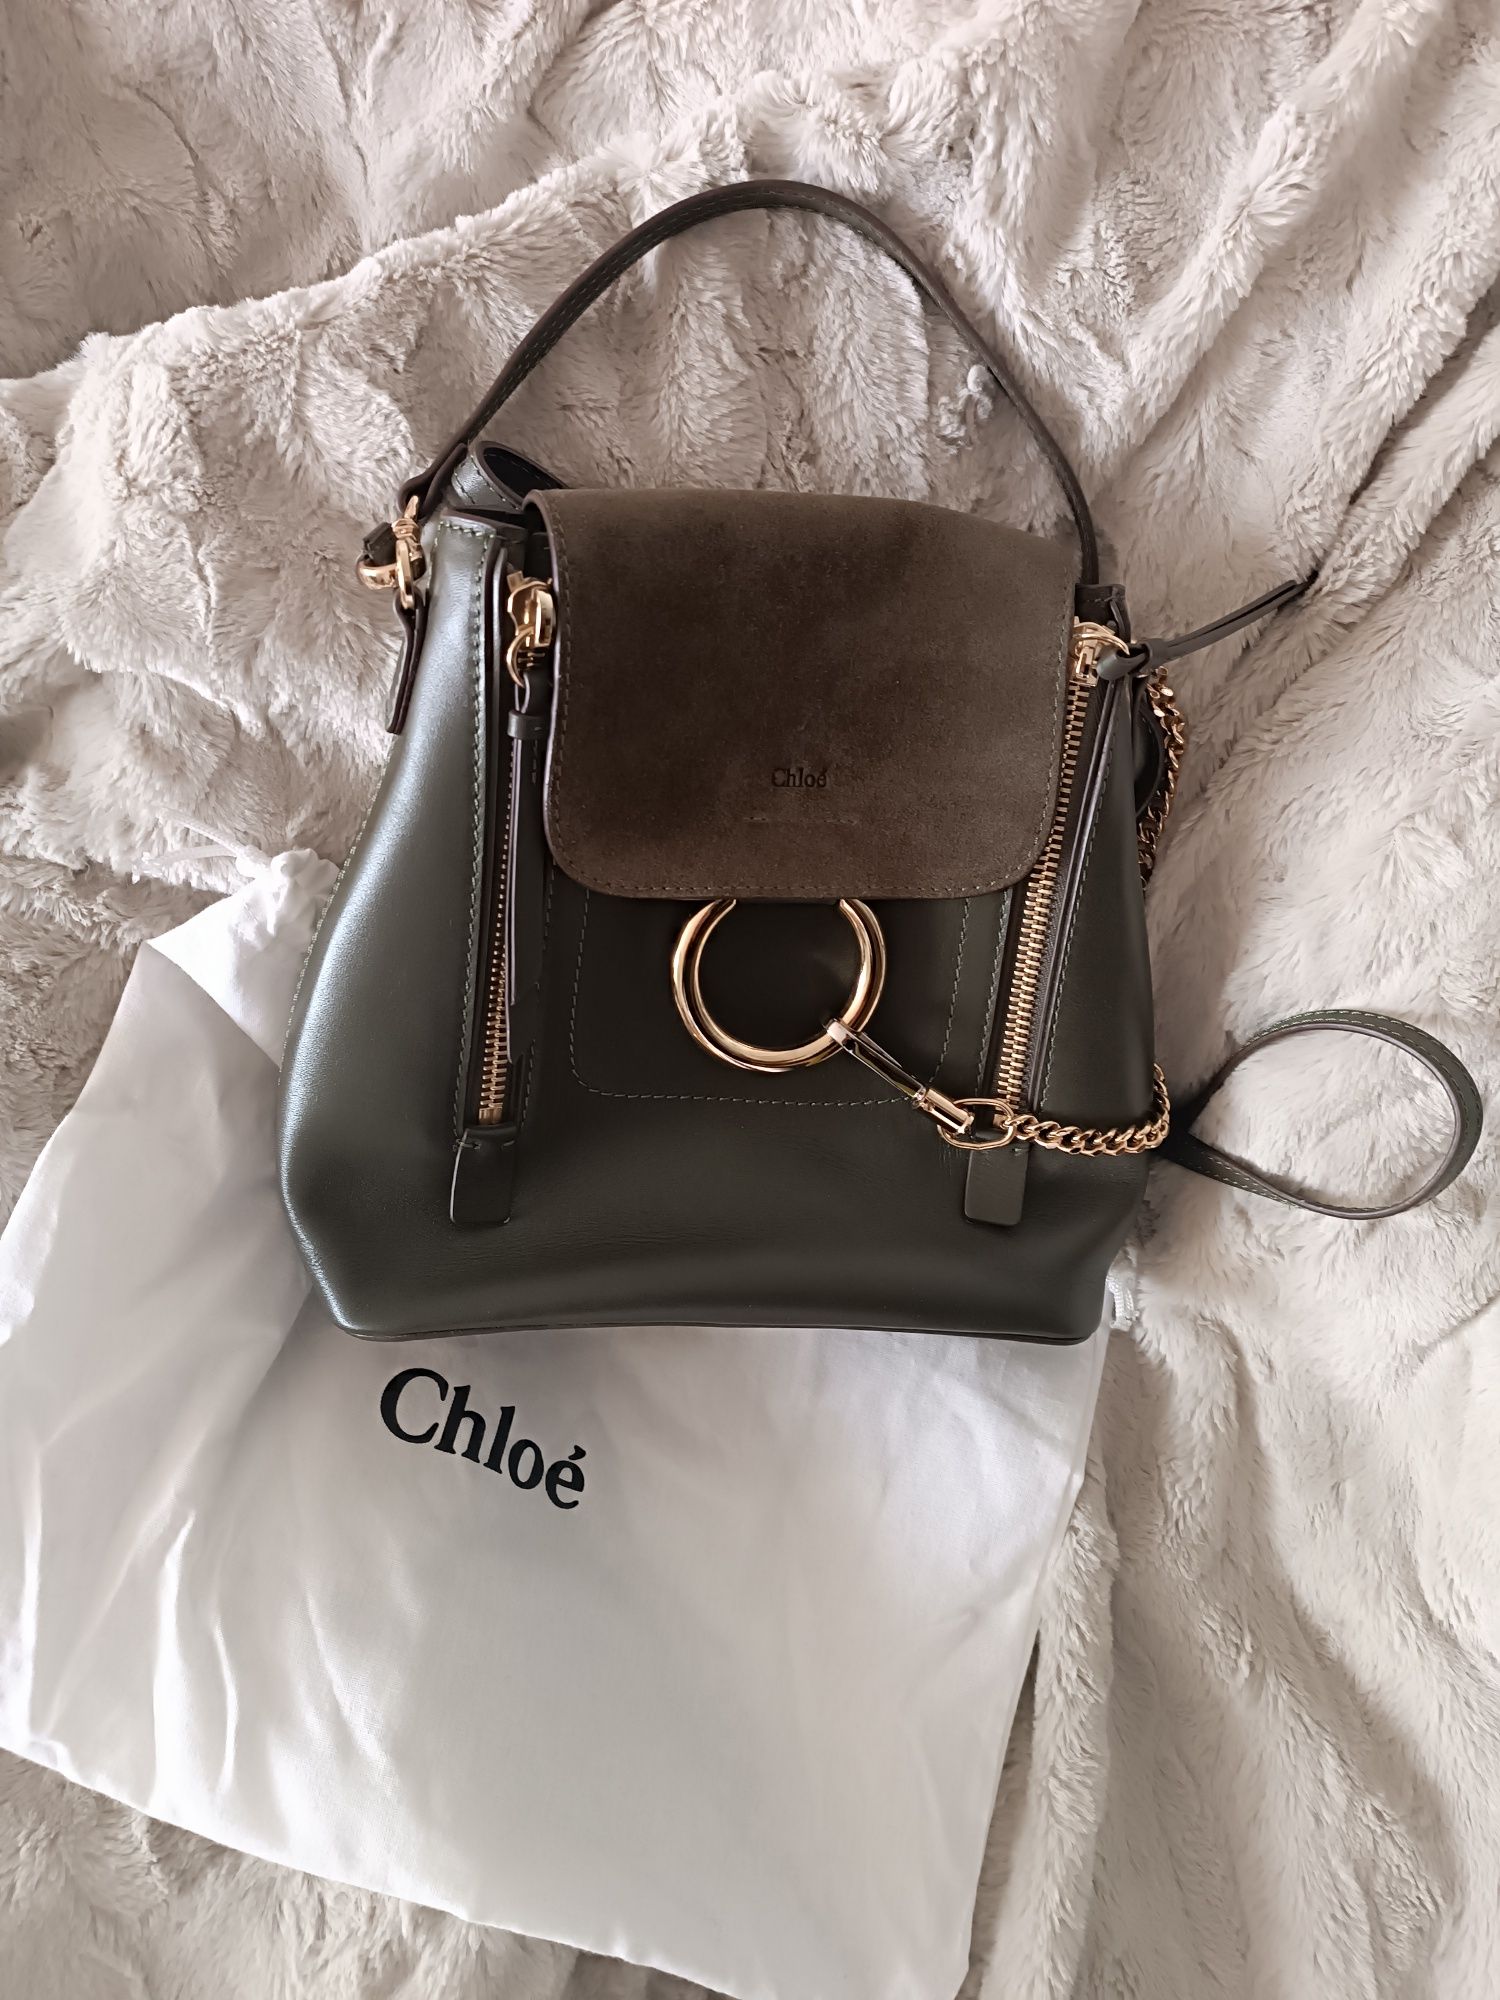 Chloe torebka plecak skórzana zielona złota khaki skóra nowa